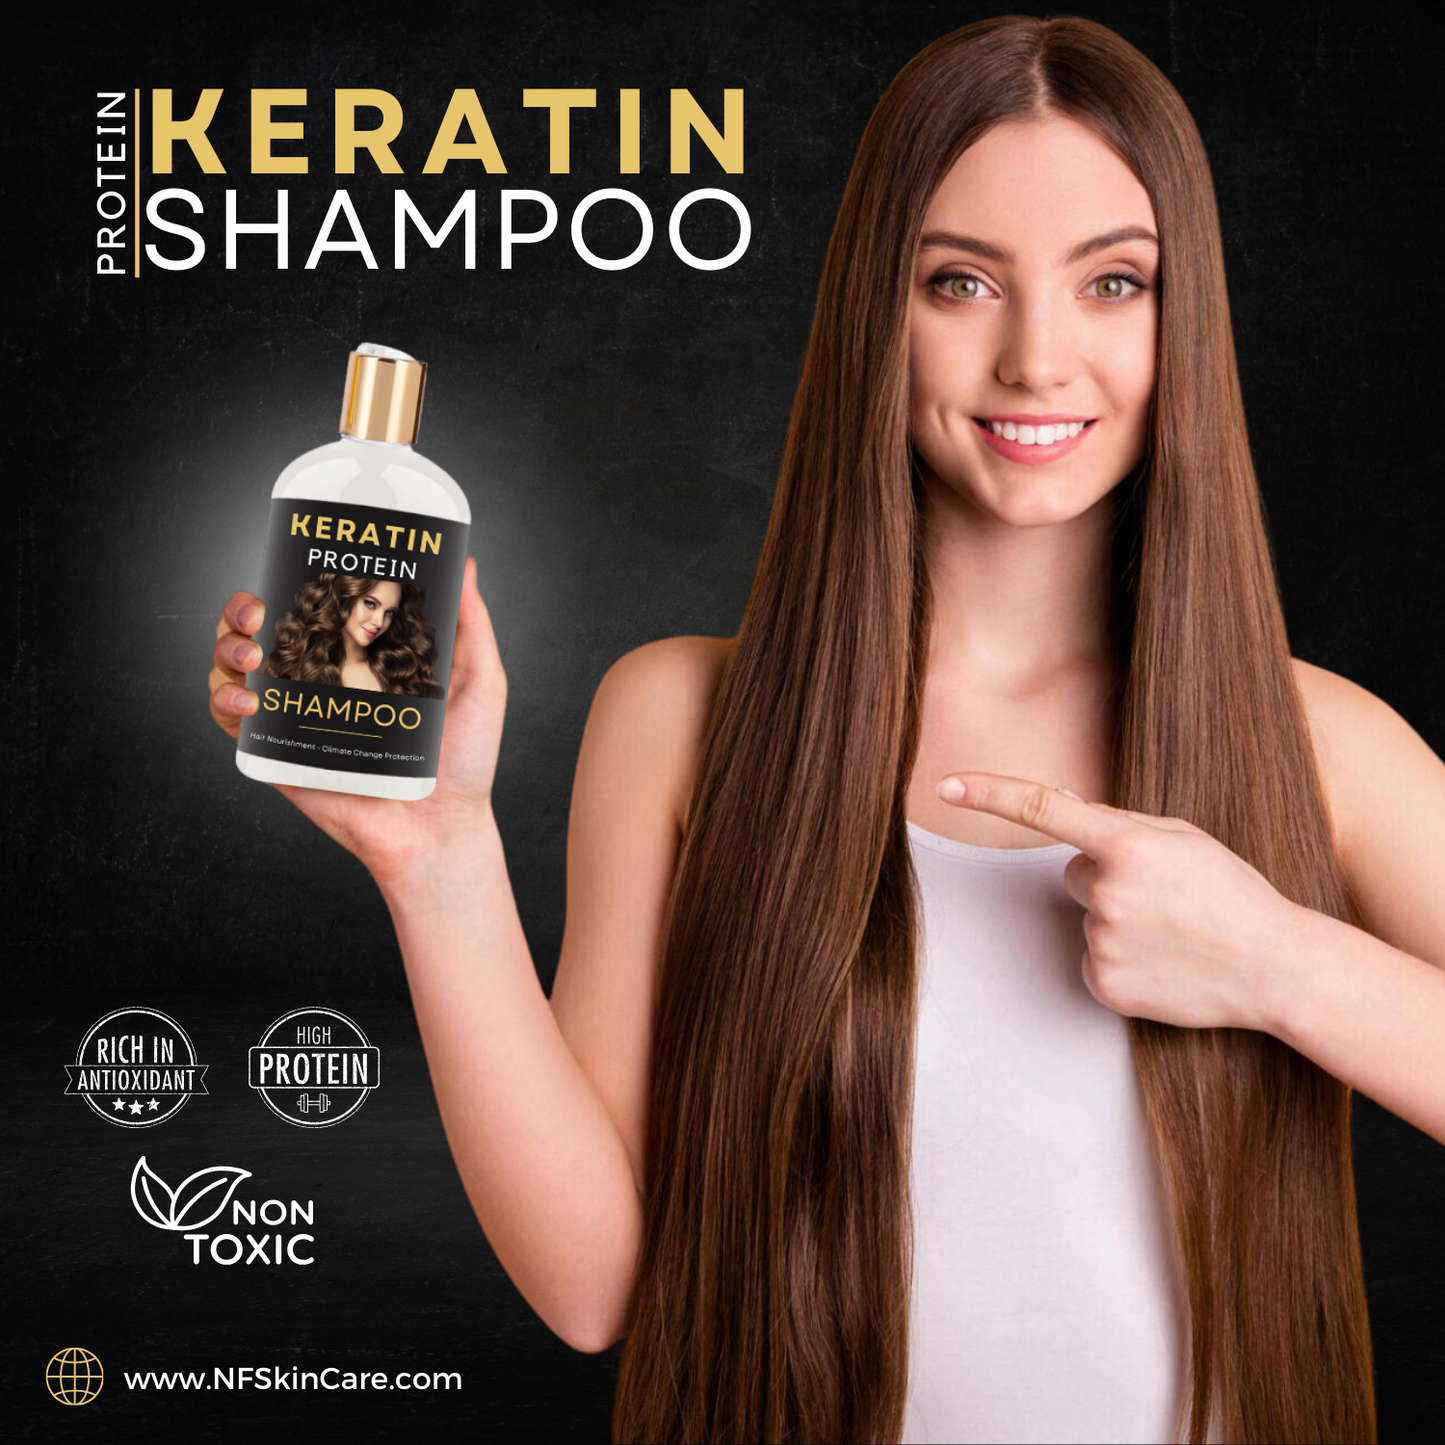 Keratin Shampoo - Keratin Shampoo for Hair Fall - Keratin Protein Shampoo 500g